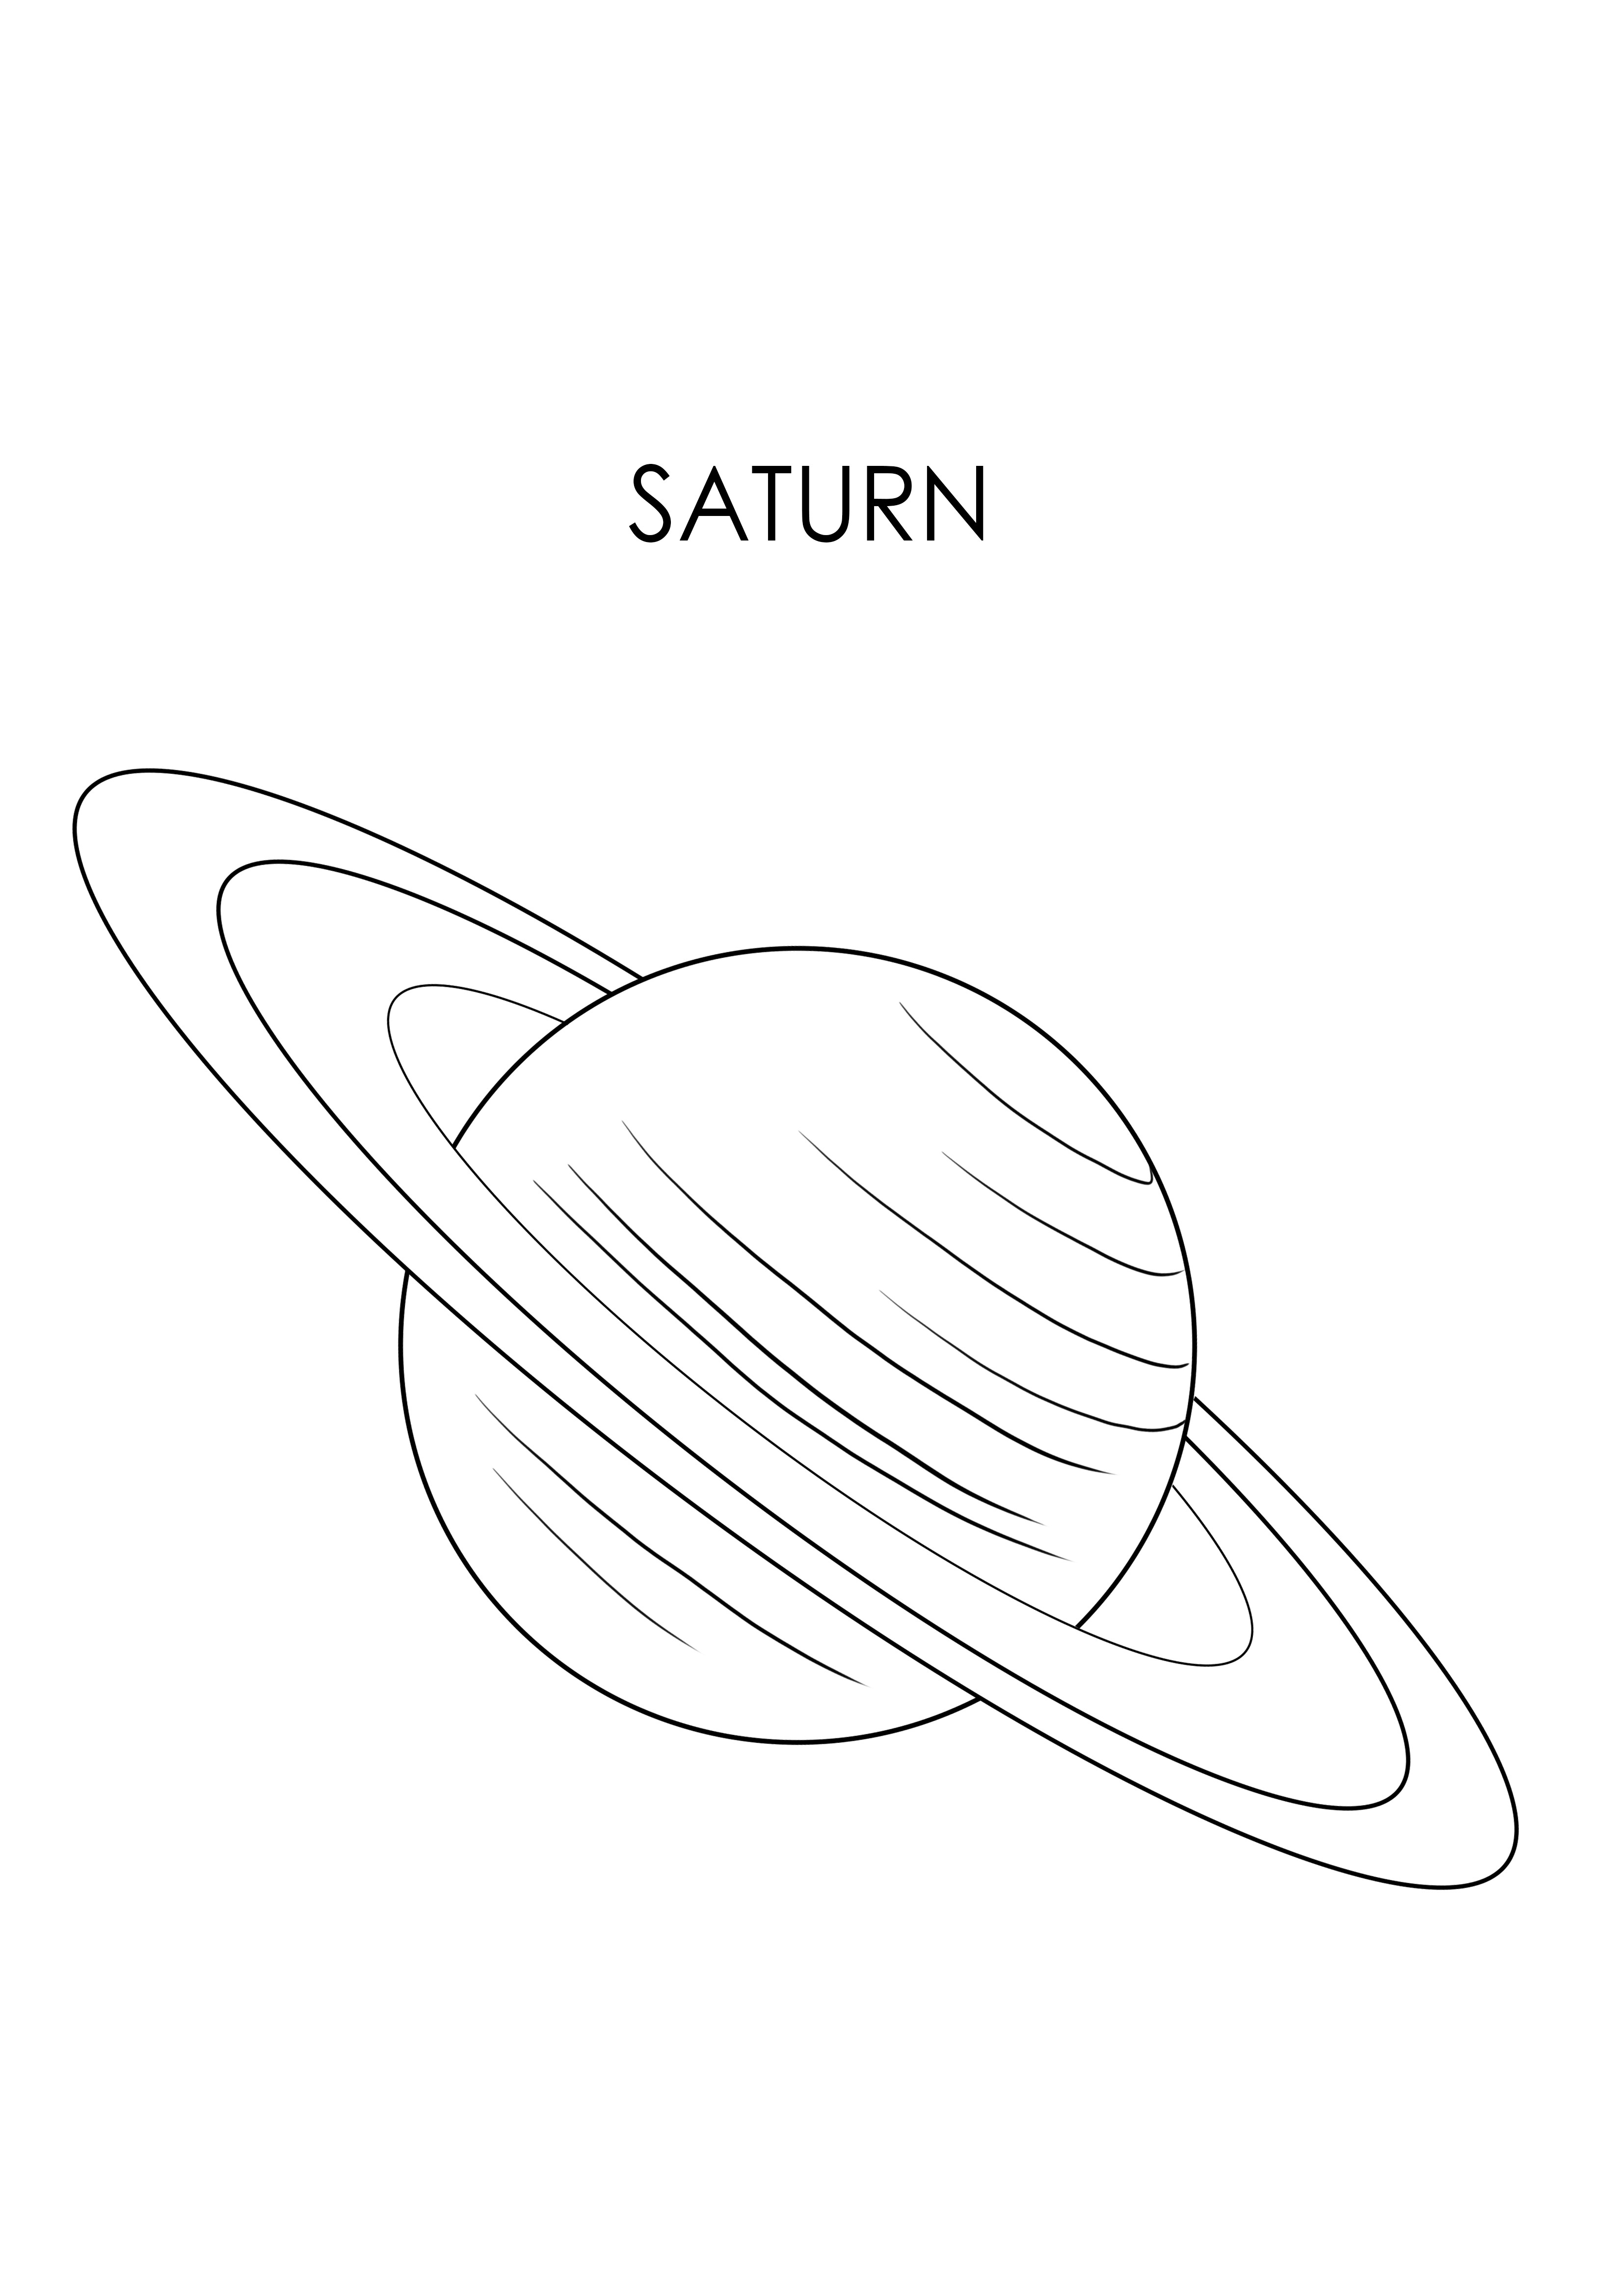 Saturn planeetta ladata ilmaiseksi